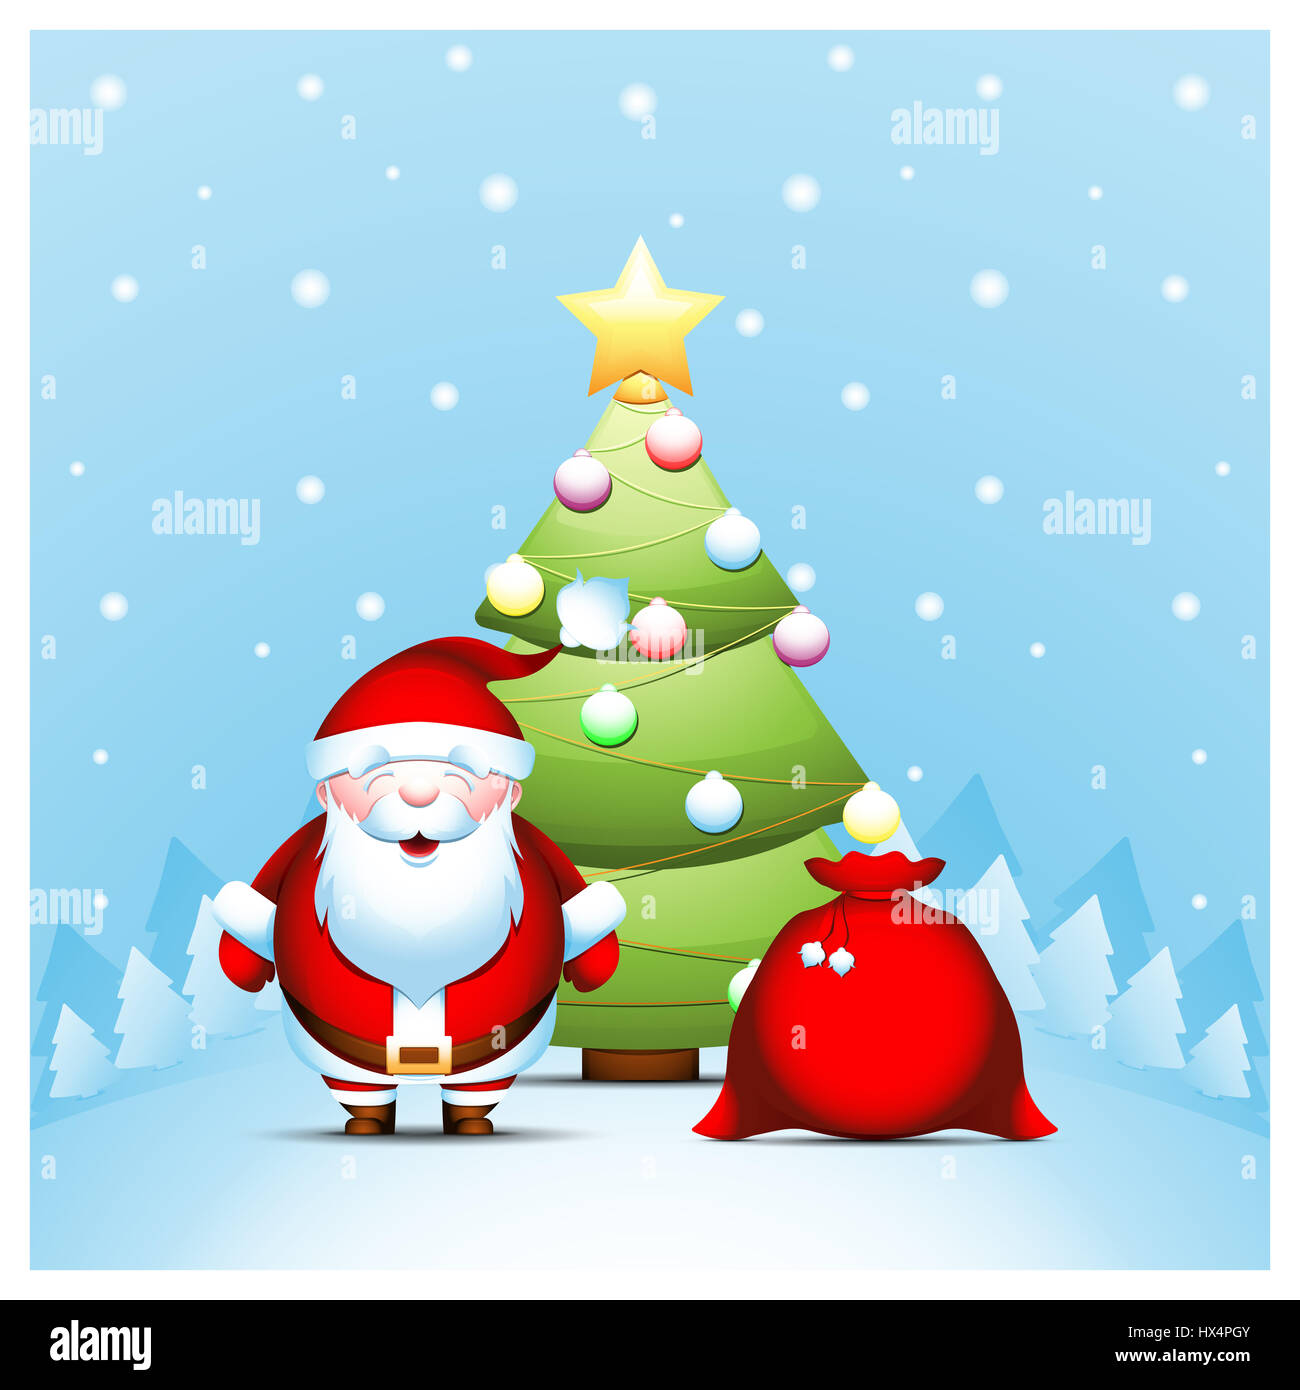 https://c8.alamy.com/compde/hx4pgy/weihnachtsmann-mit-geschenken-tasche-weihnachtsbaum-vor-hintergrund-der-winterlandschaft-hx4pgy.jpg